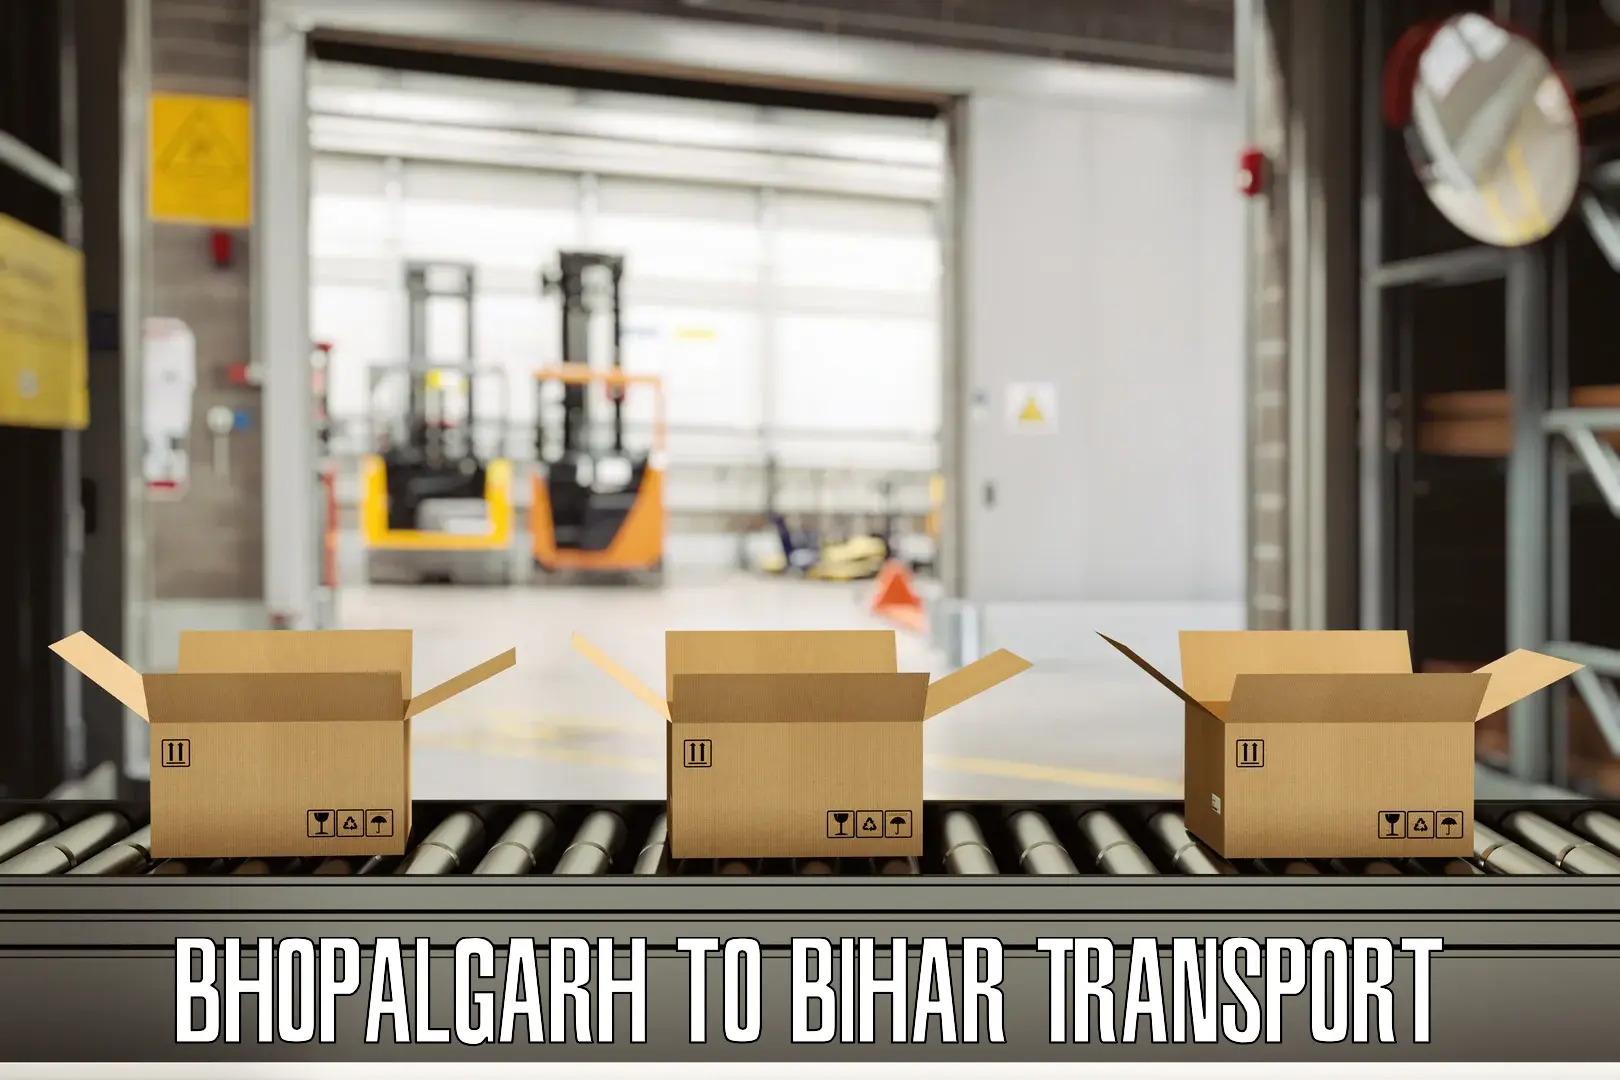 Bike transport service Bhopalgarh to Chakai